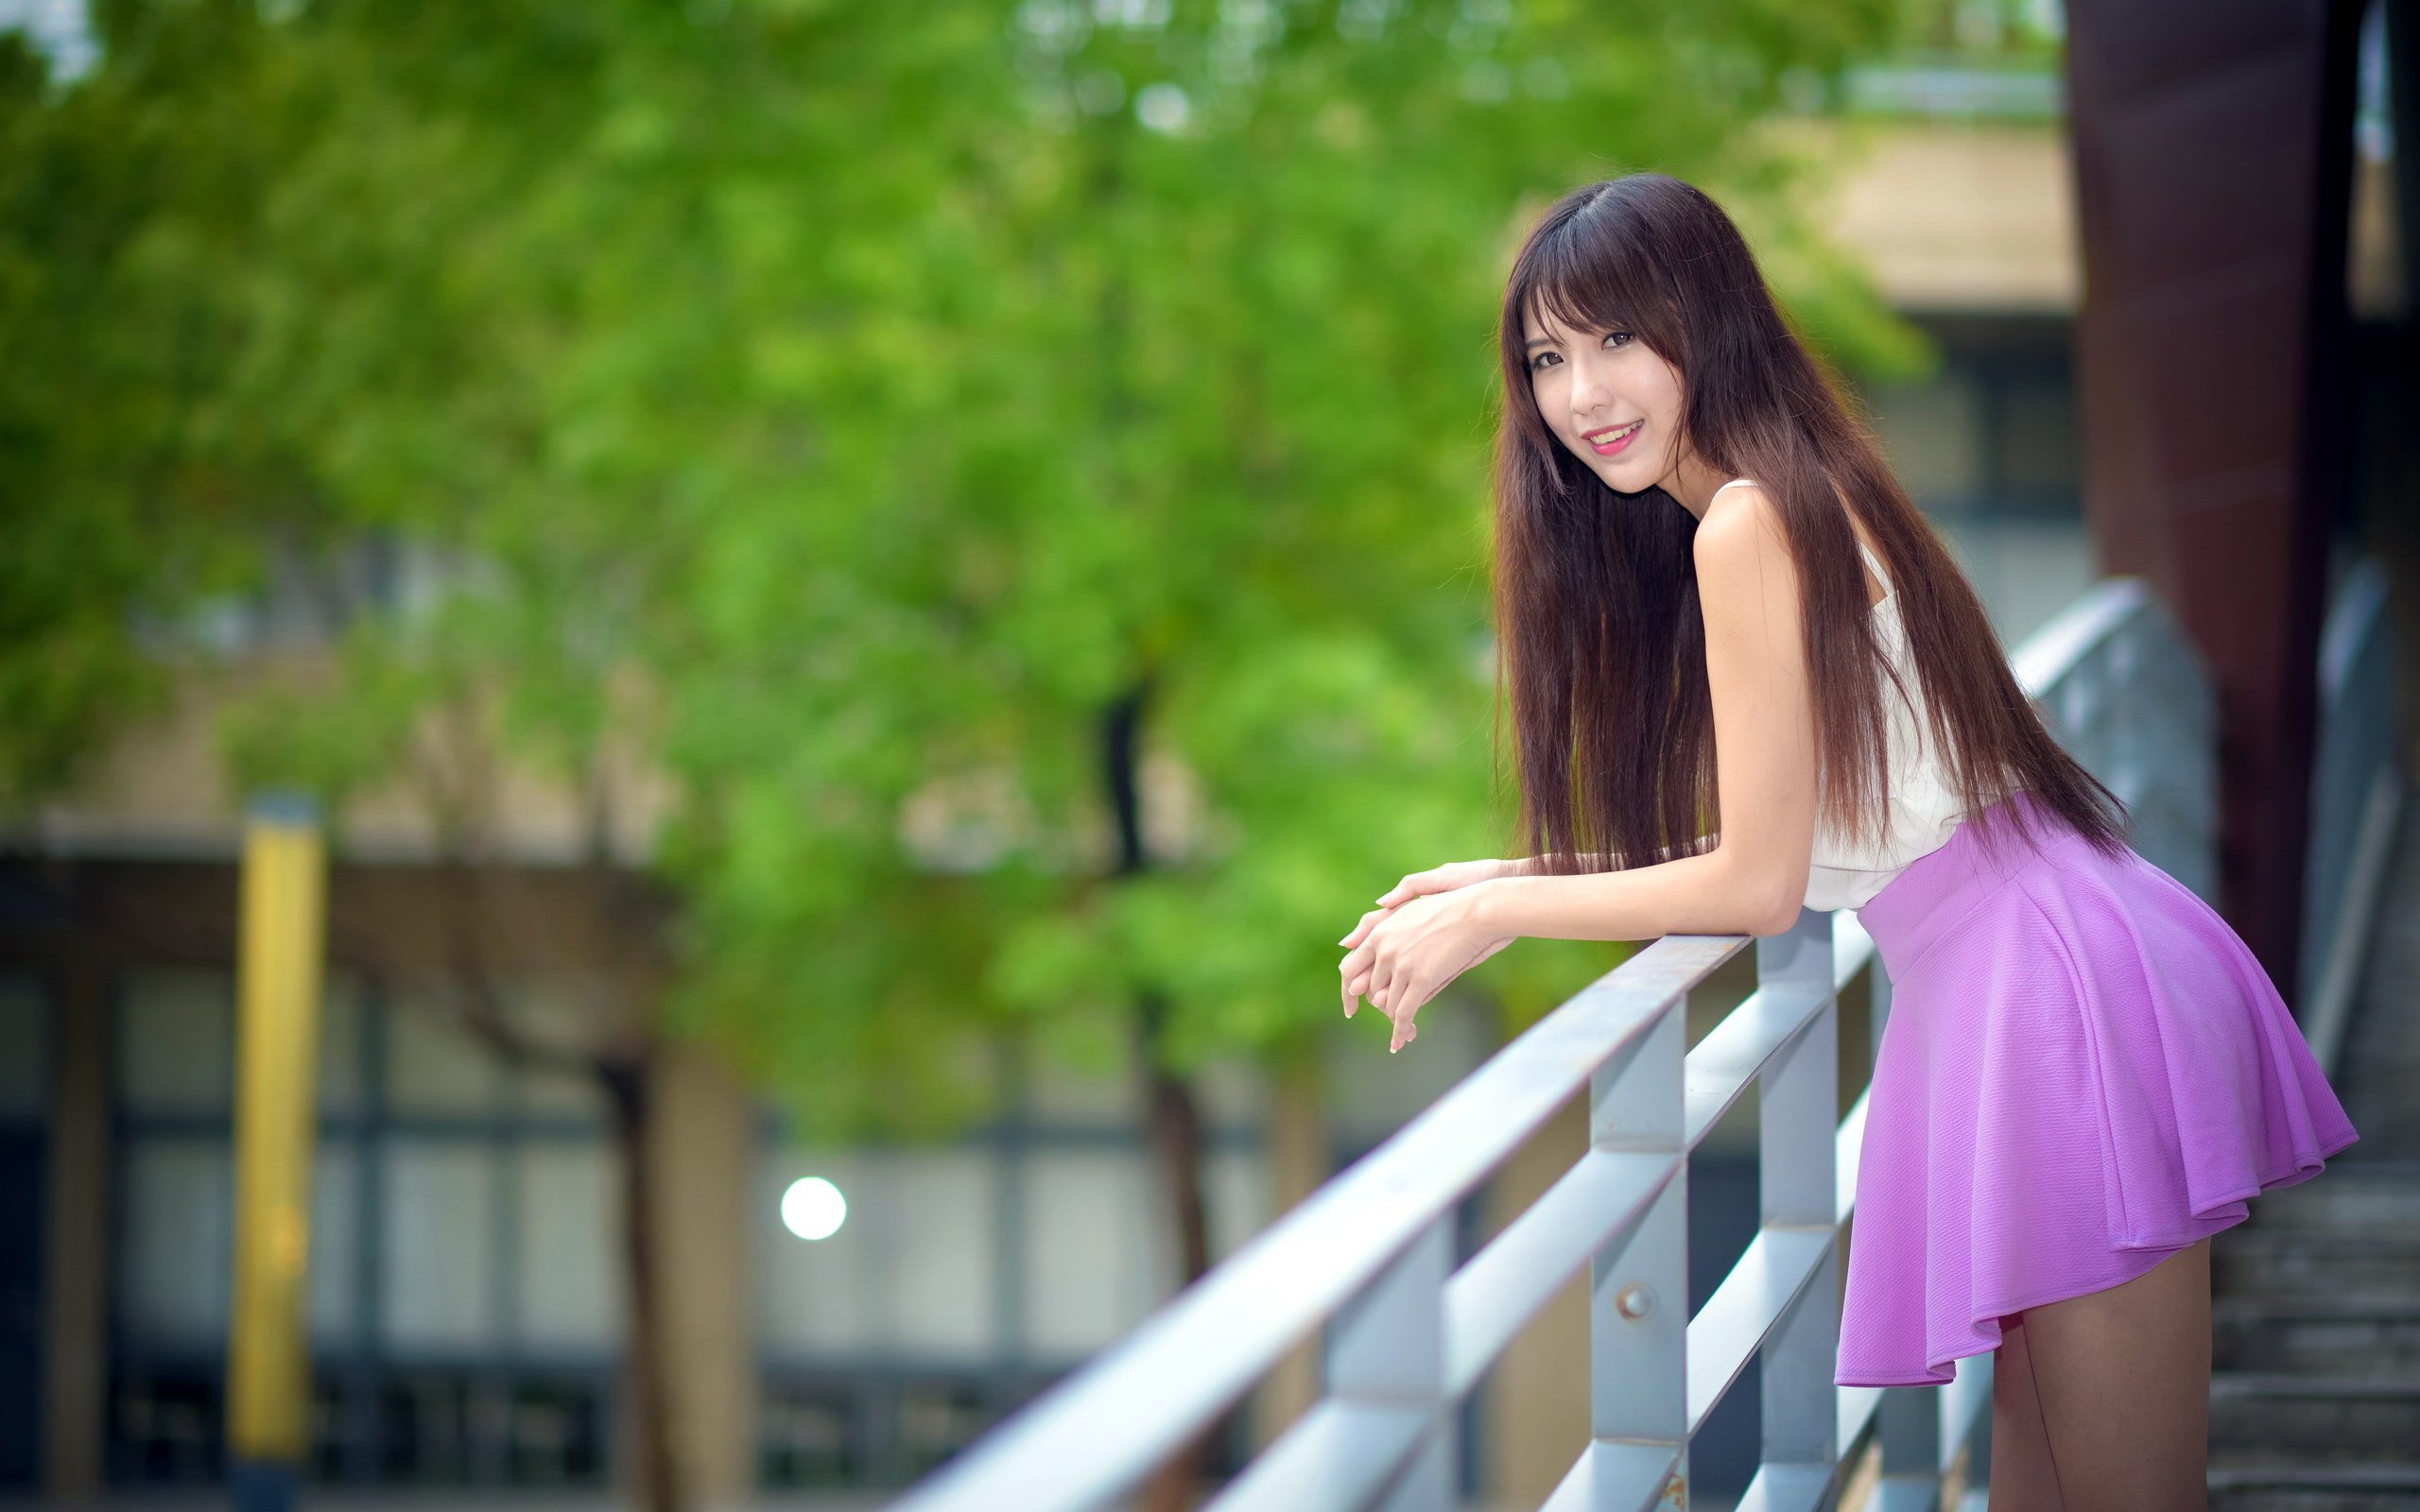 Asian Model Women Long Hair Dark Hair Depth Of Field Skirt White Shirt Leaning Railings Trees Leaves 2560x1600